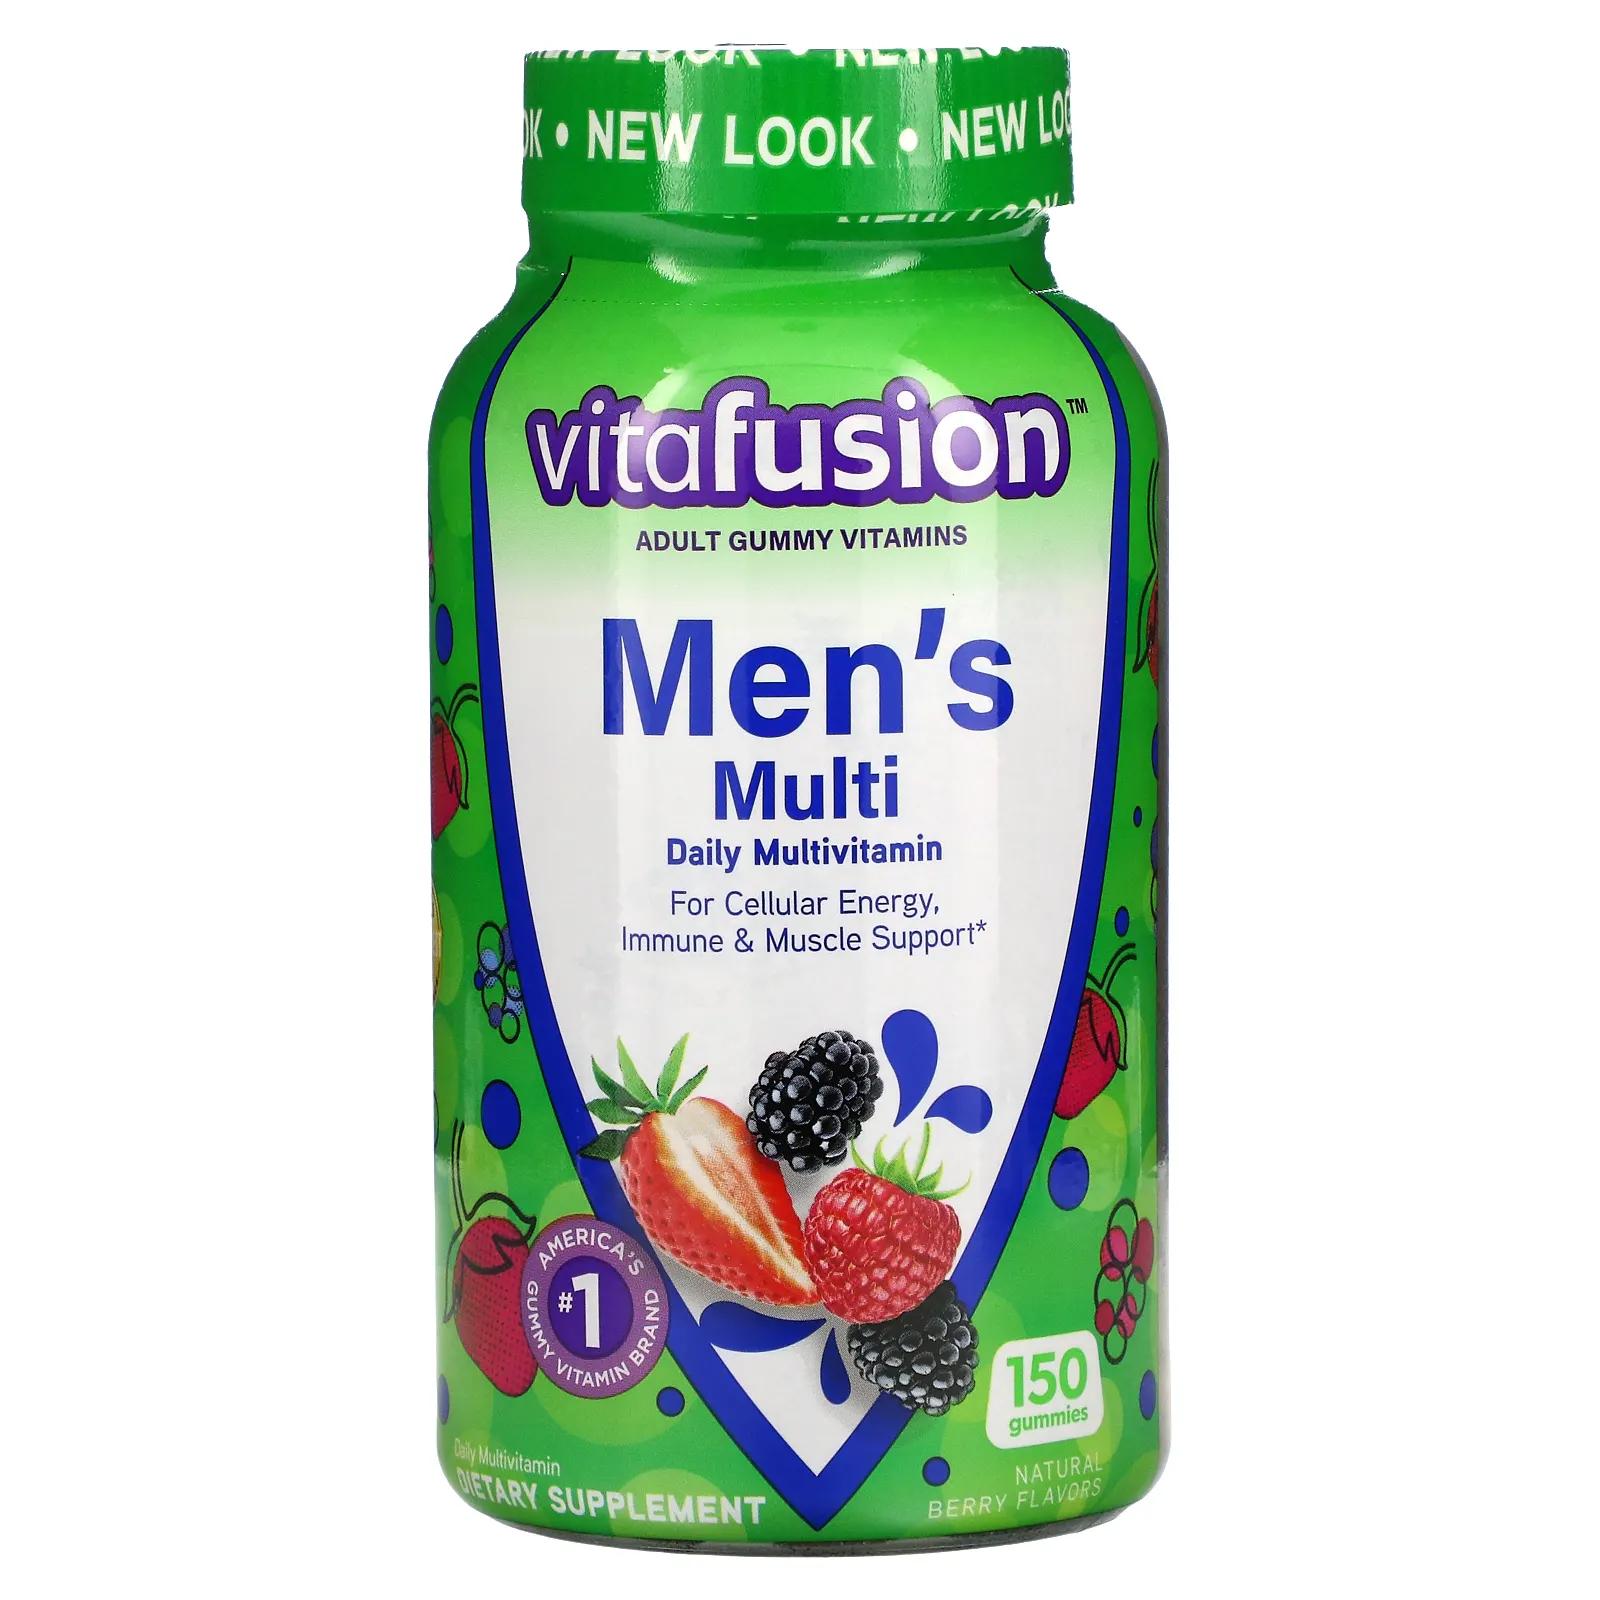 VitaFusion Комплексные мультивитамины для мужчин натуральные ягодные вкусы 150 жевательных таблеток